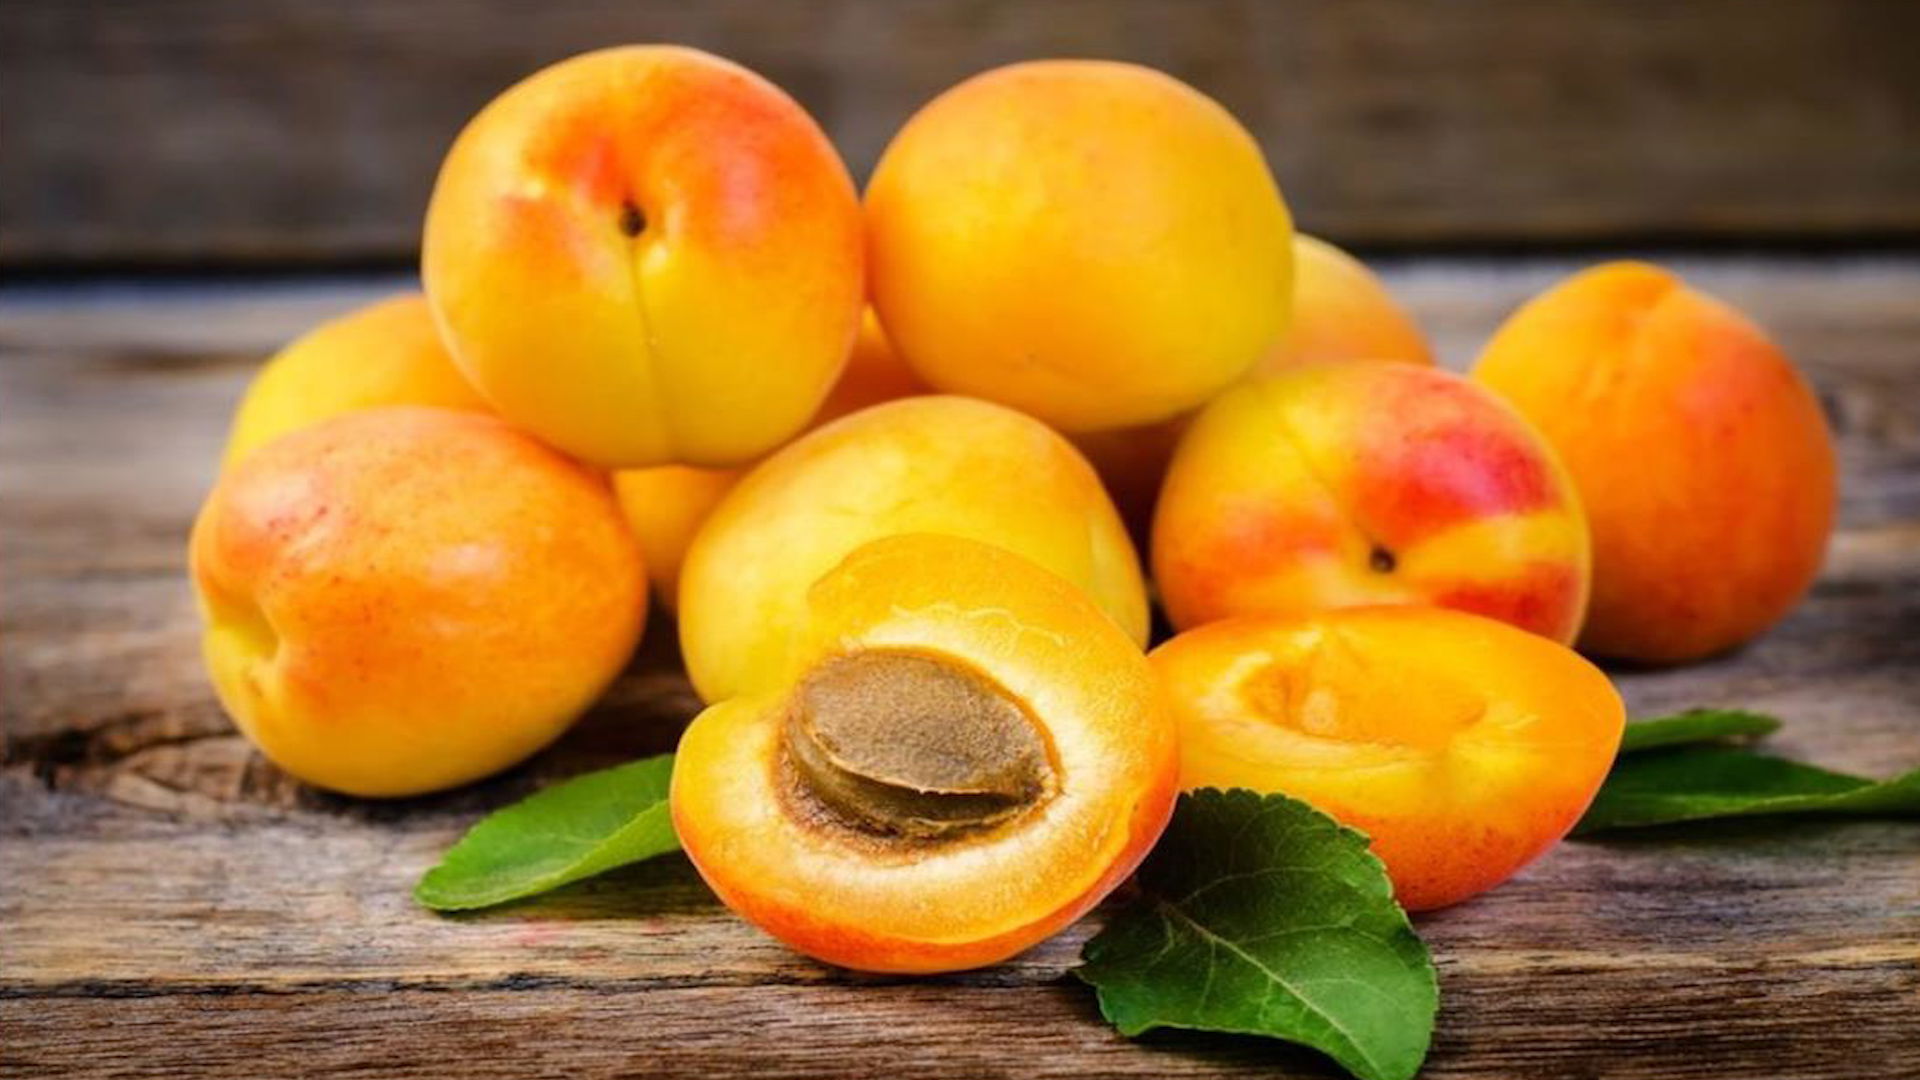 100 حبة من بذور هذه الفاكهة كافية لإنهاء حياة الإنسان في ثوان